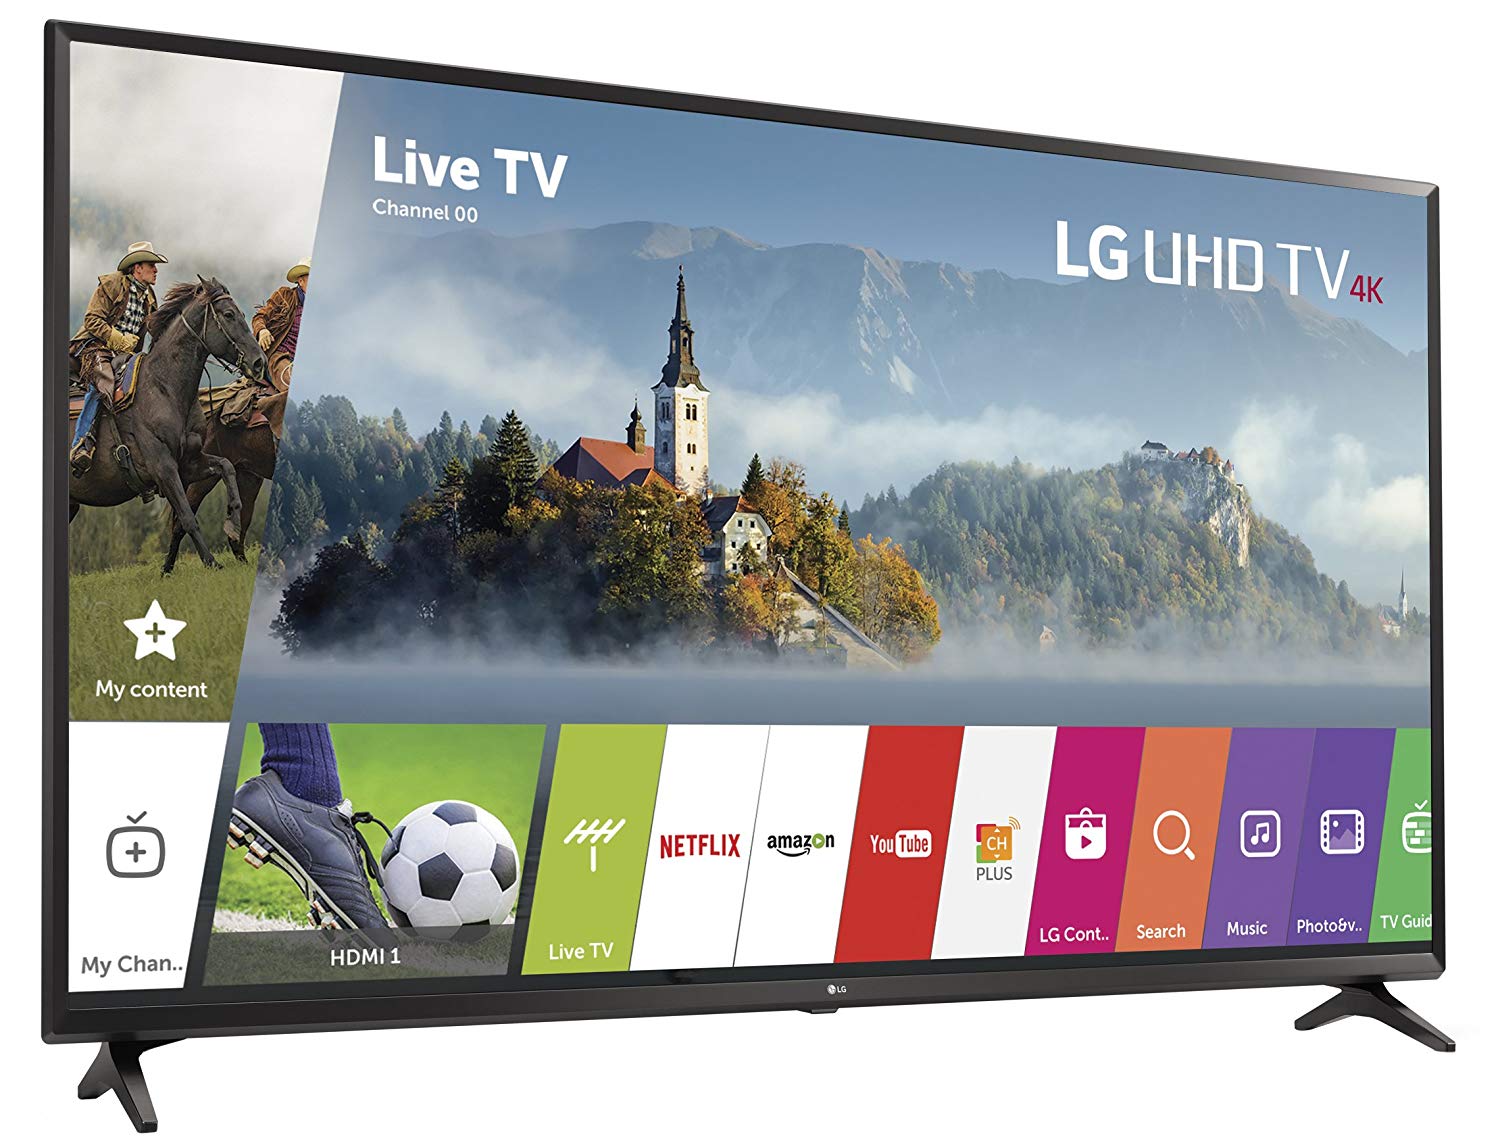 LG Electronics 65UJ6300 65-Inch 4K Ultra HD Smart LED TV (2017 Model)